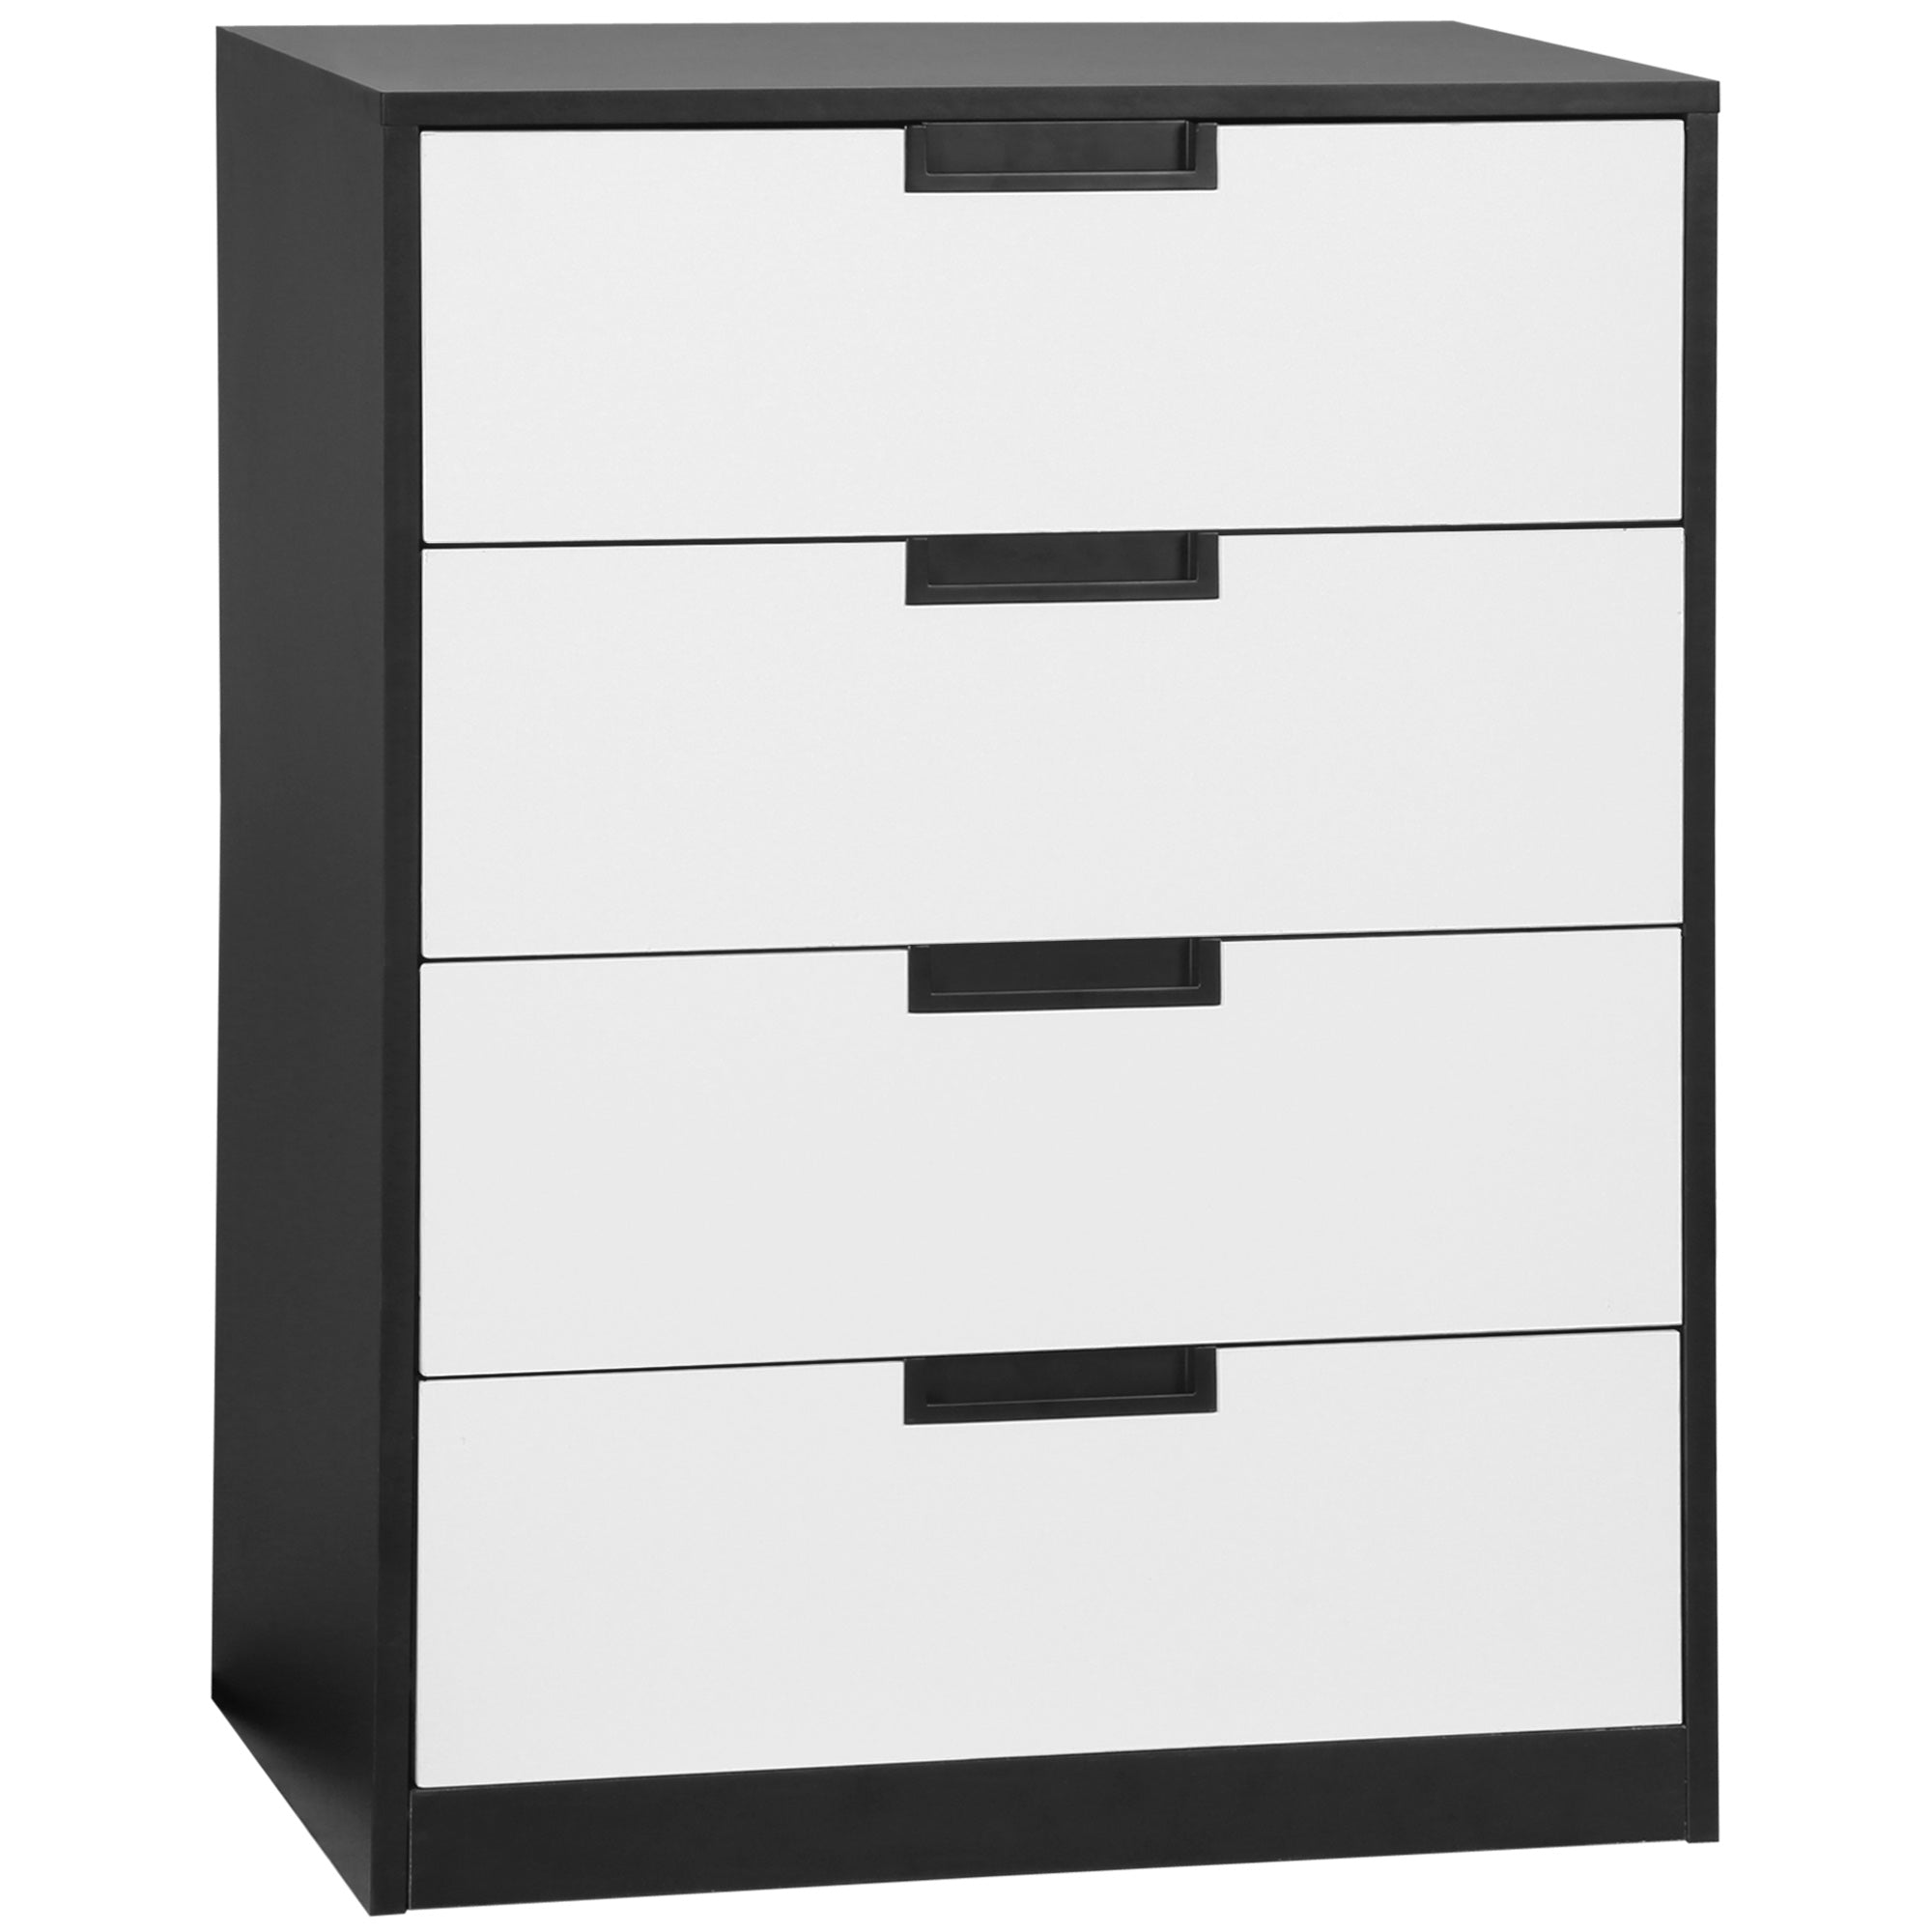 Drawer Chest, 4-Drawer Storage Cabinet Organiser for Bedroom, Living Room, 60cmx40cmx80cm, White and Black-0